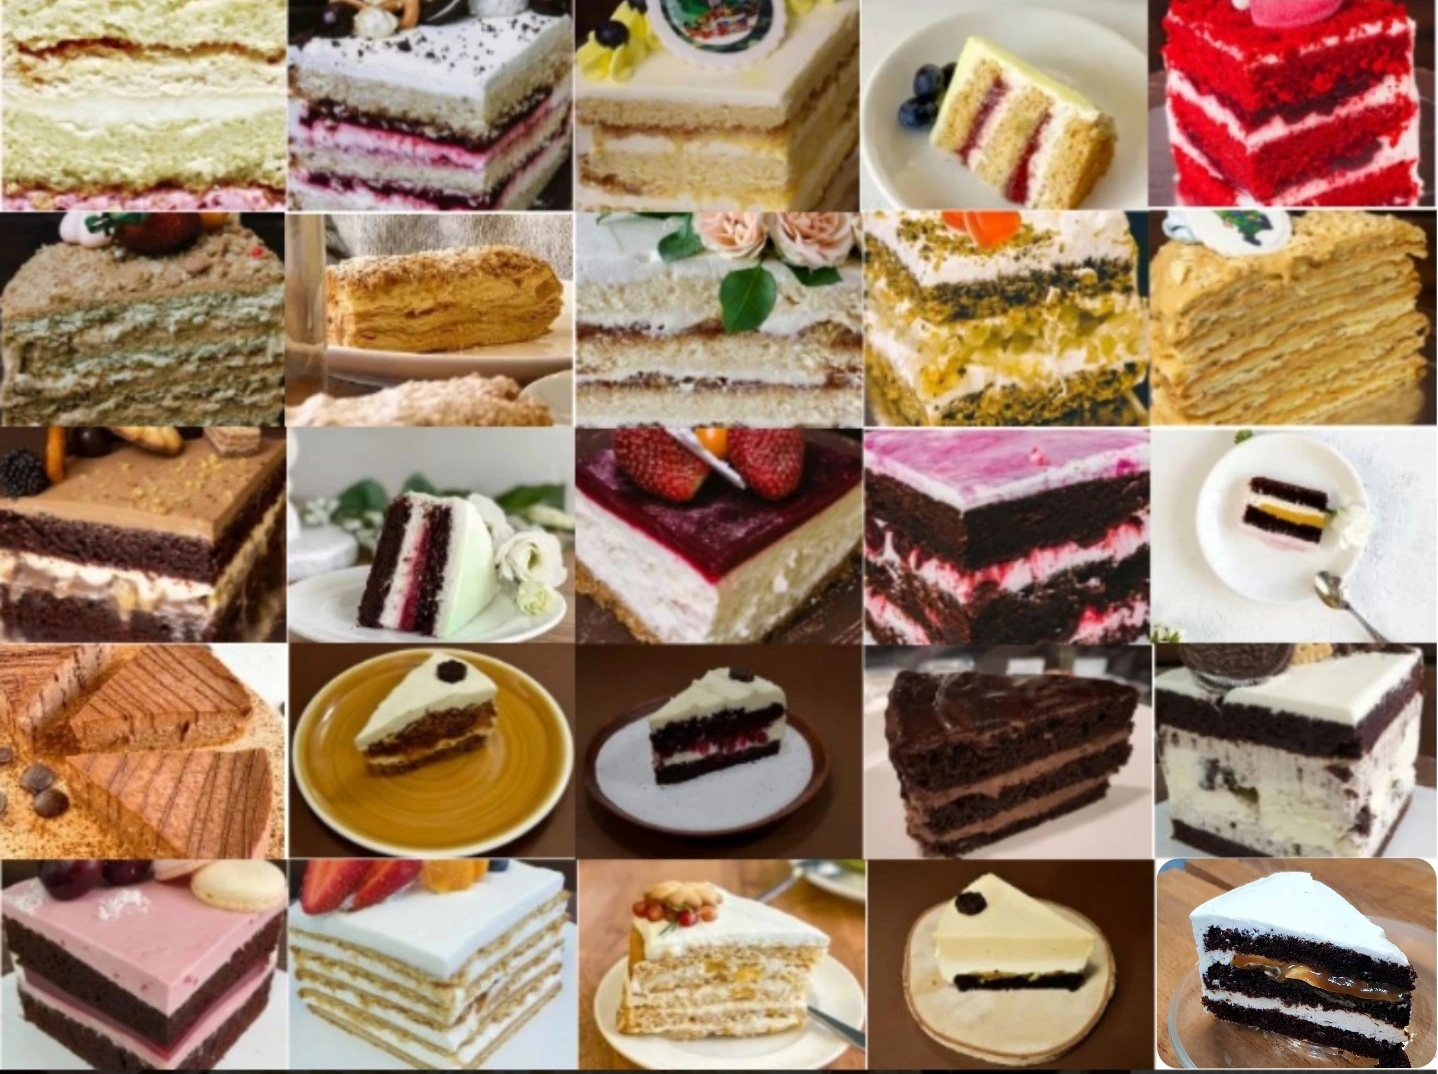 Какие виды тортов бывают фото и название